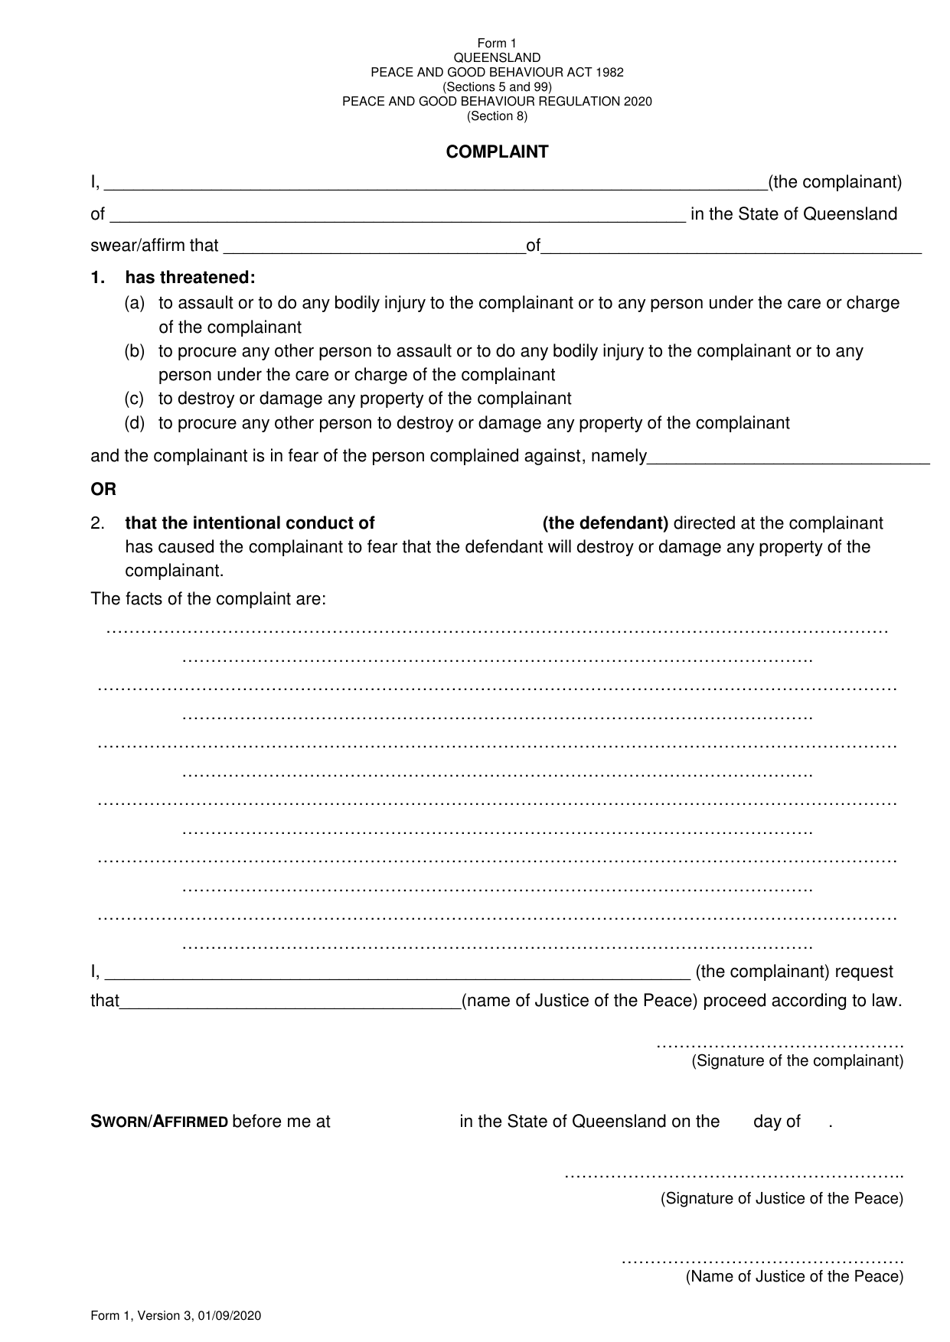 Form 1 Complaint - Queensland, Australia, Page 1